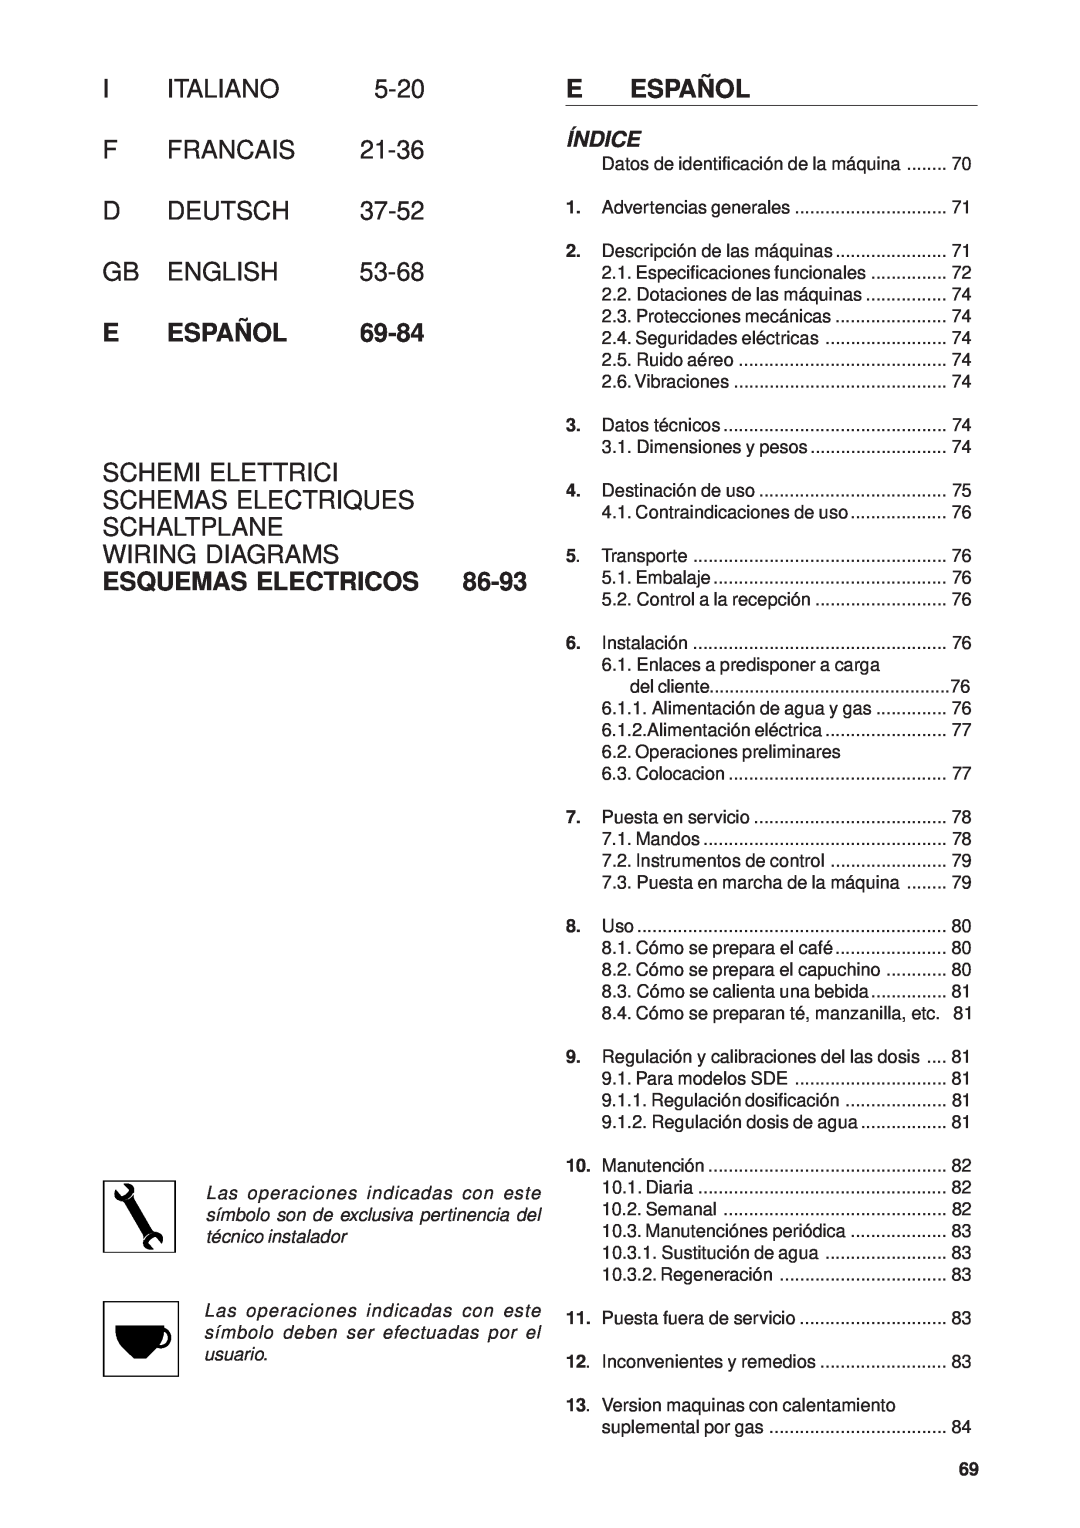 Rancilio Millennium E Español, Schemi Elettrici Schemas Electriques Schaltplane Wiring Diagrams, Esquemas Electricos, 5-20 